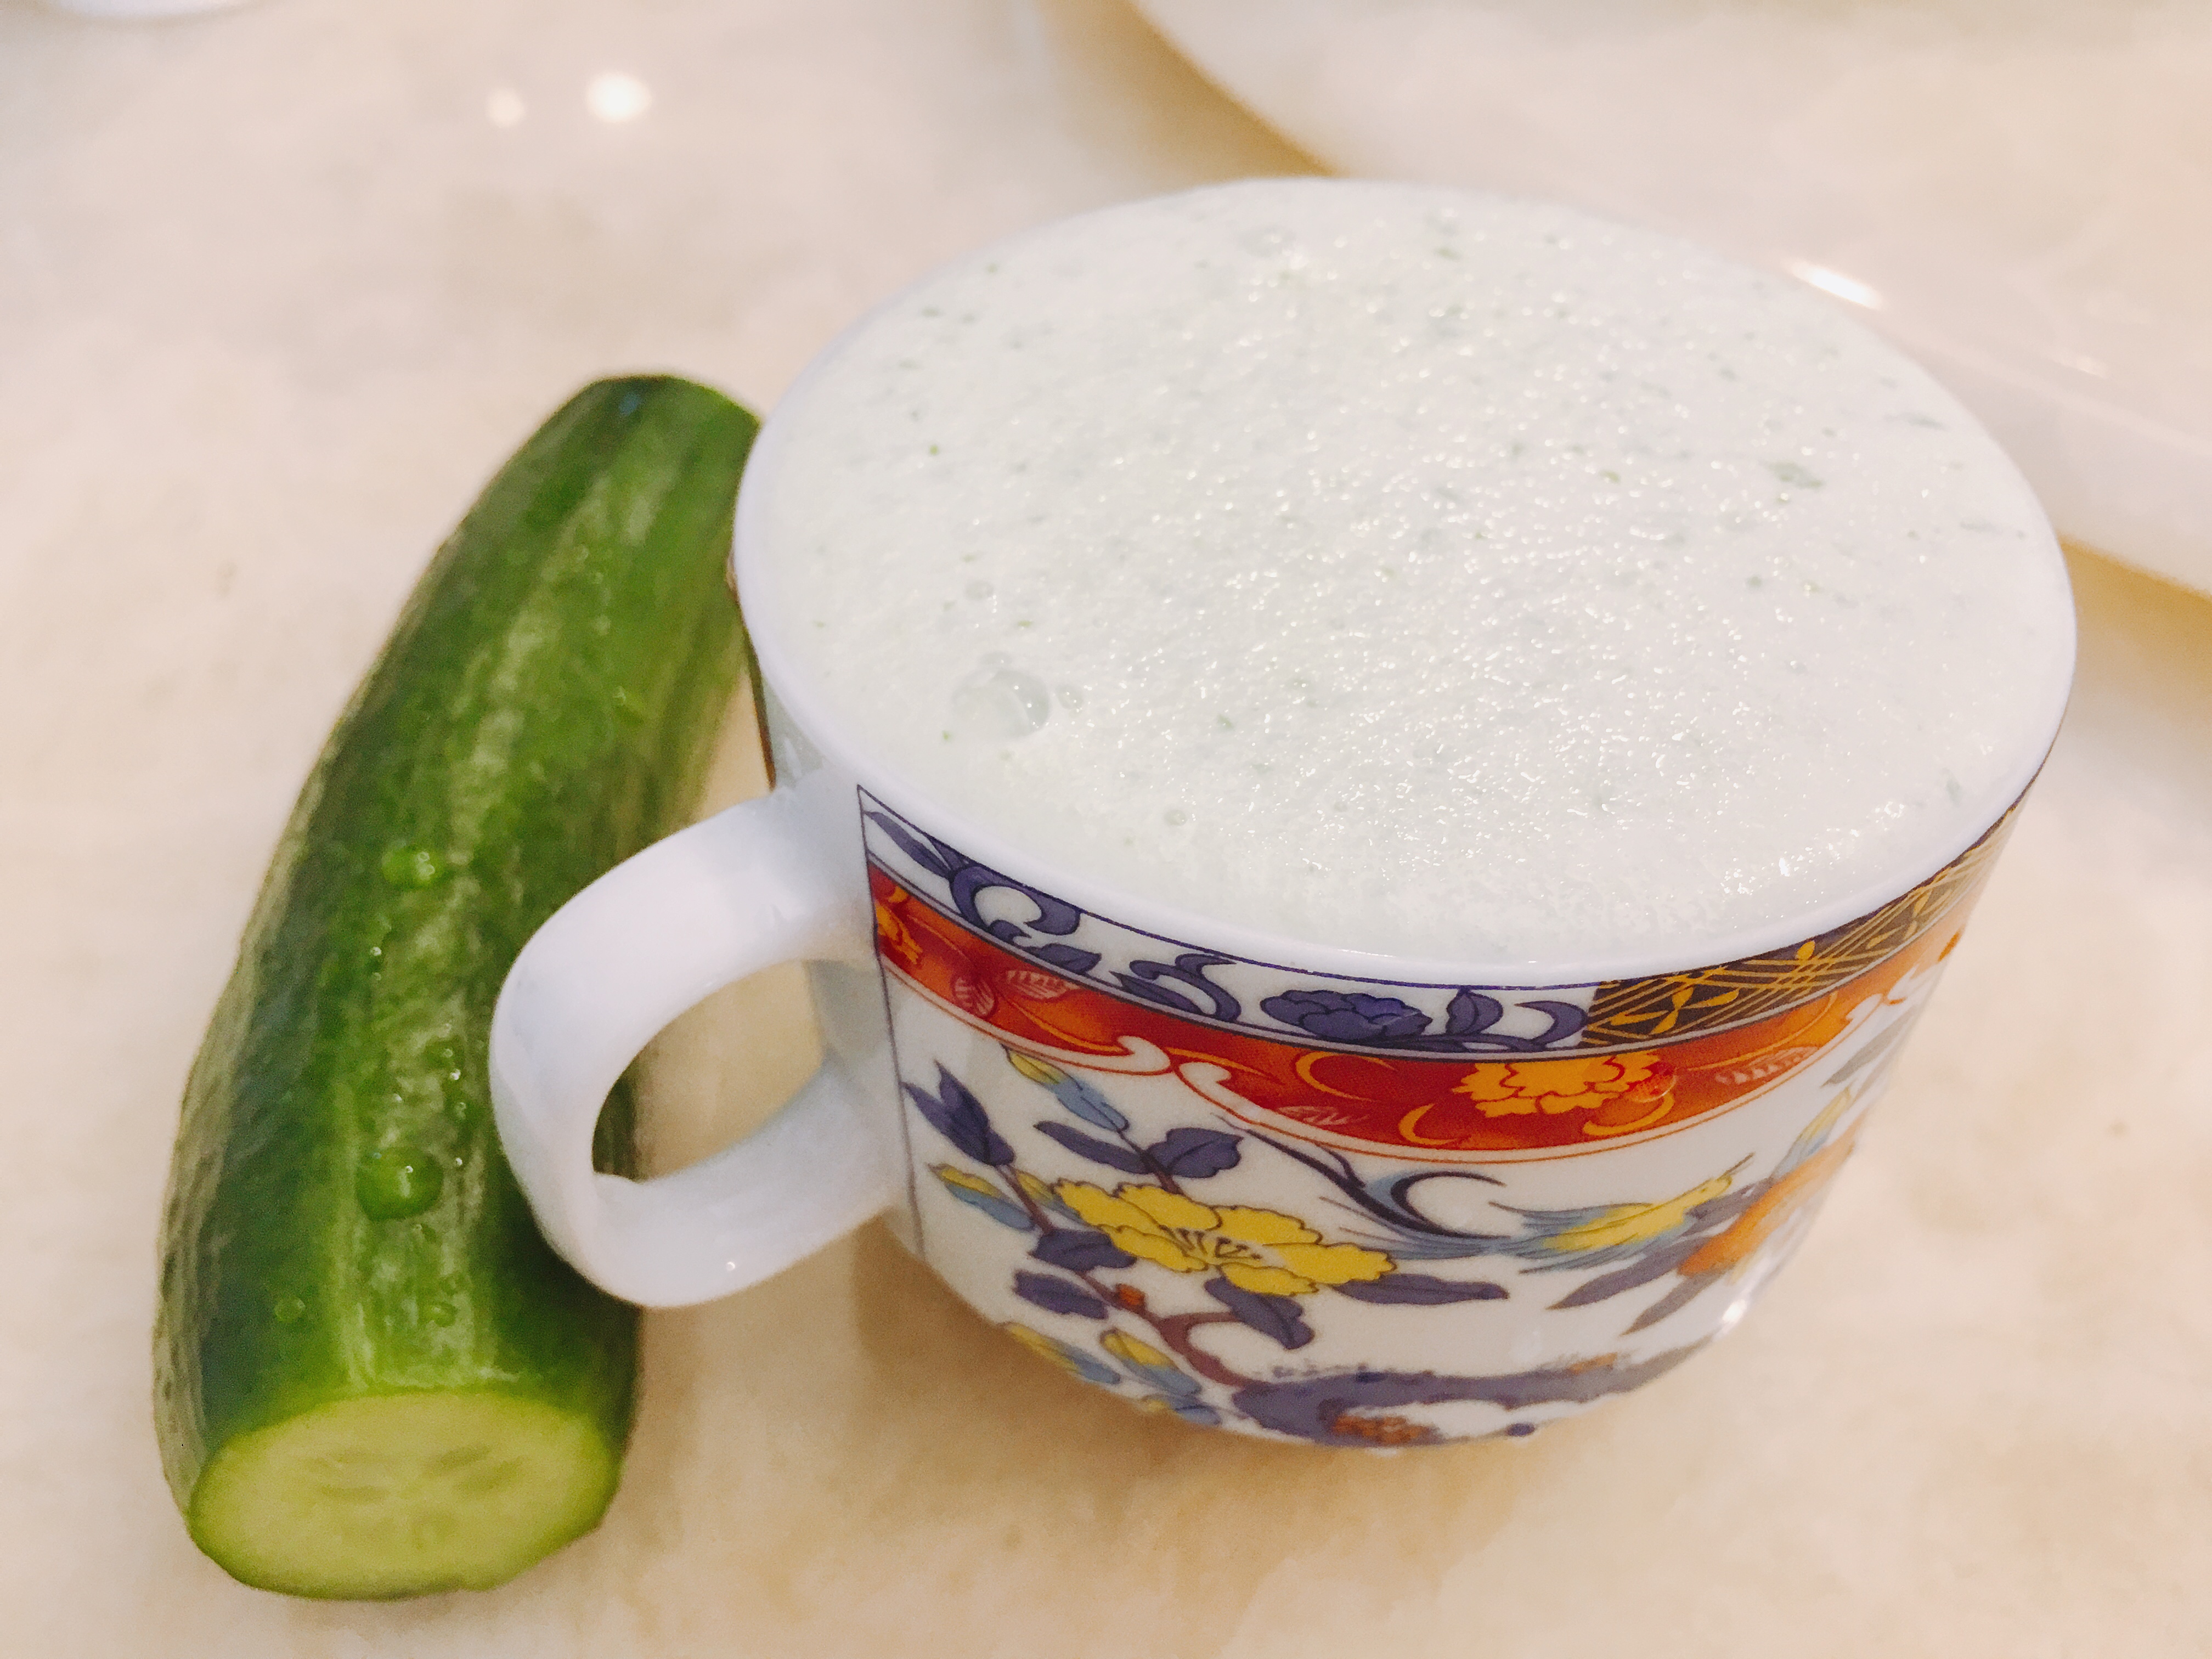 青瓜奶昔 - Cucumber milkshake的做法